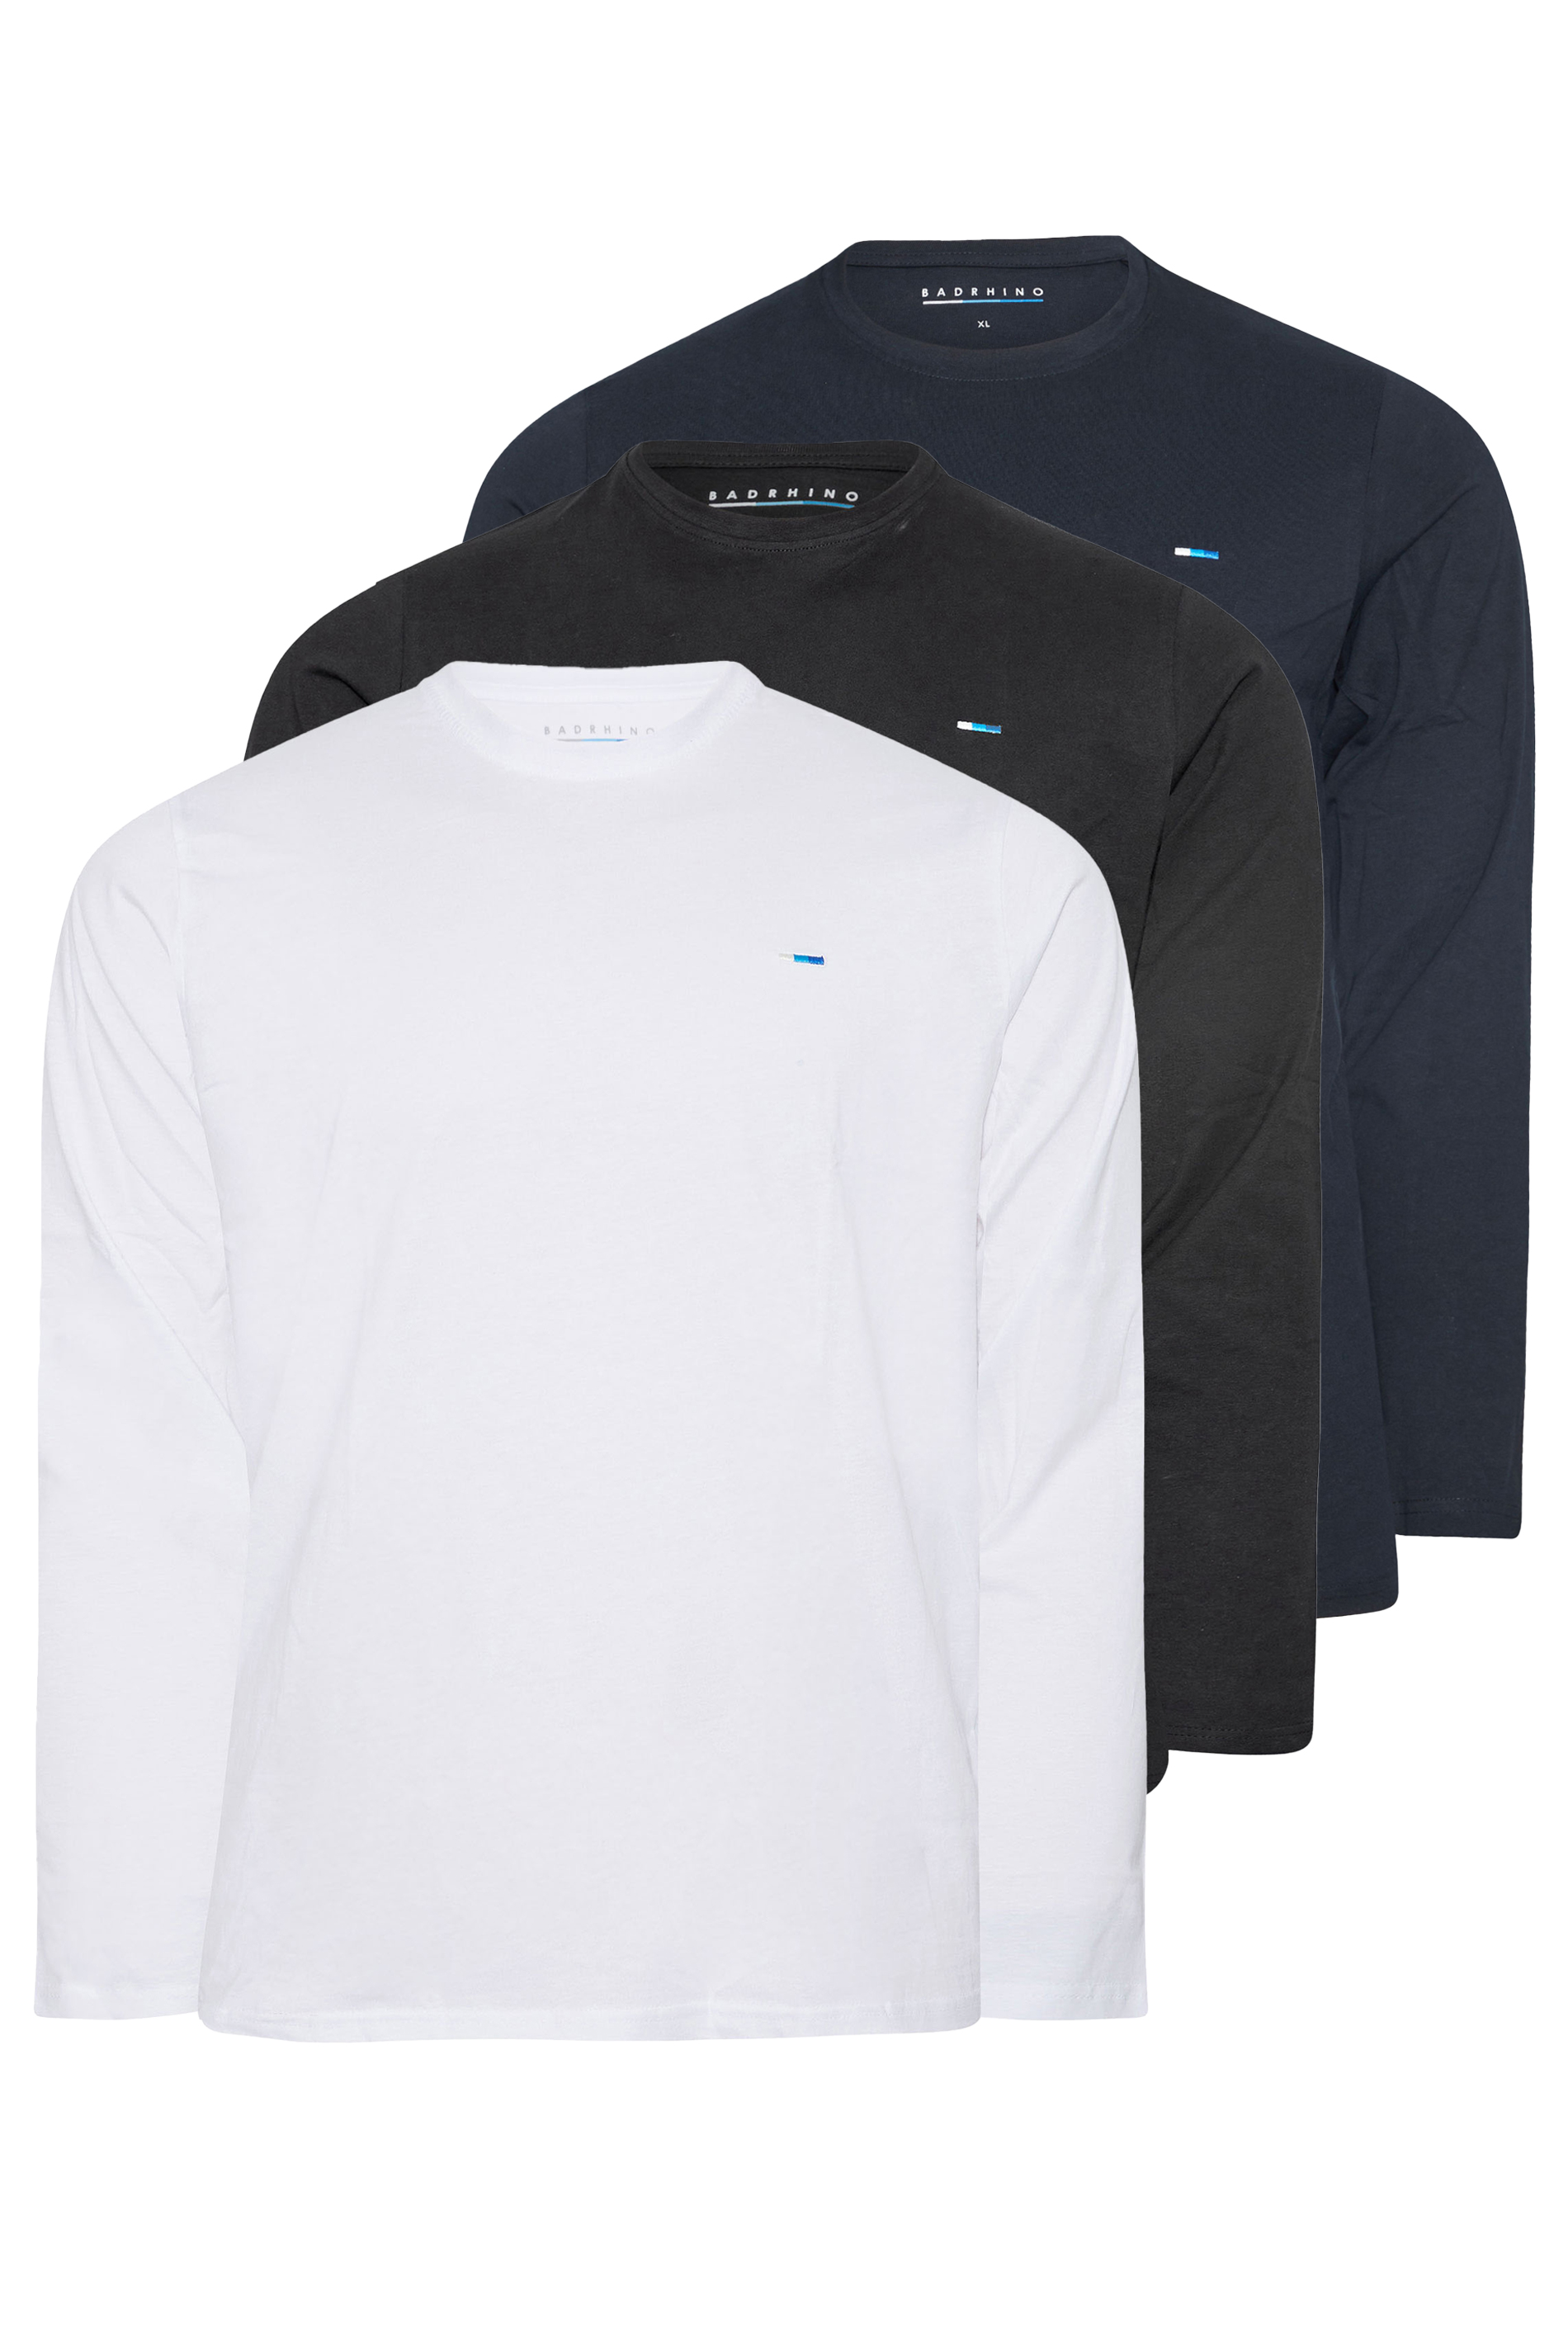 BadRhino 3 Pack Long Sleeve T-Shirts | BadRhino 2